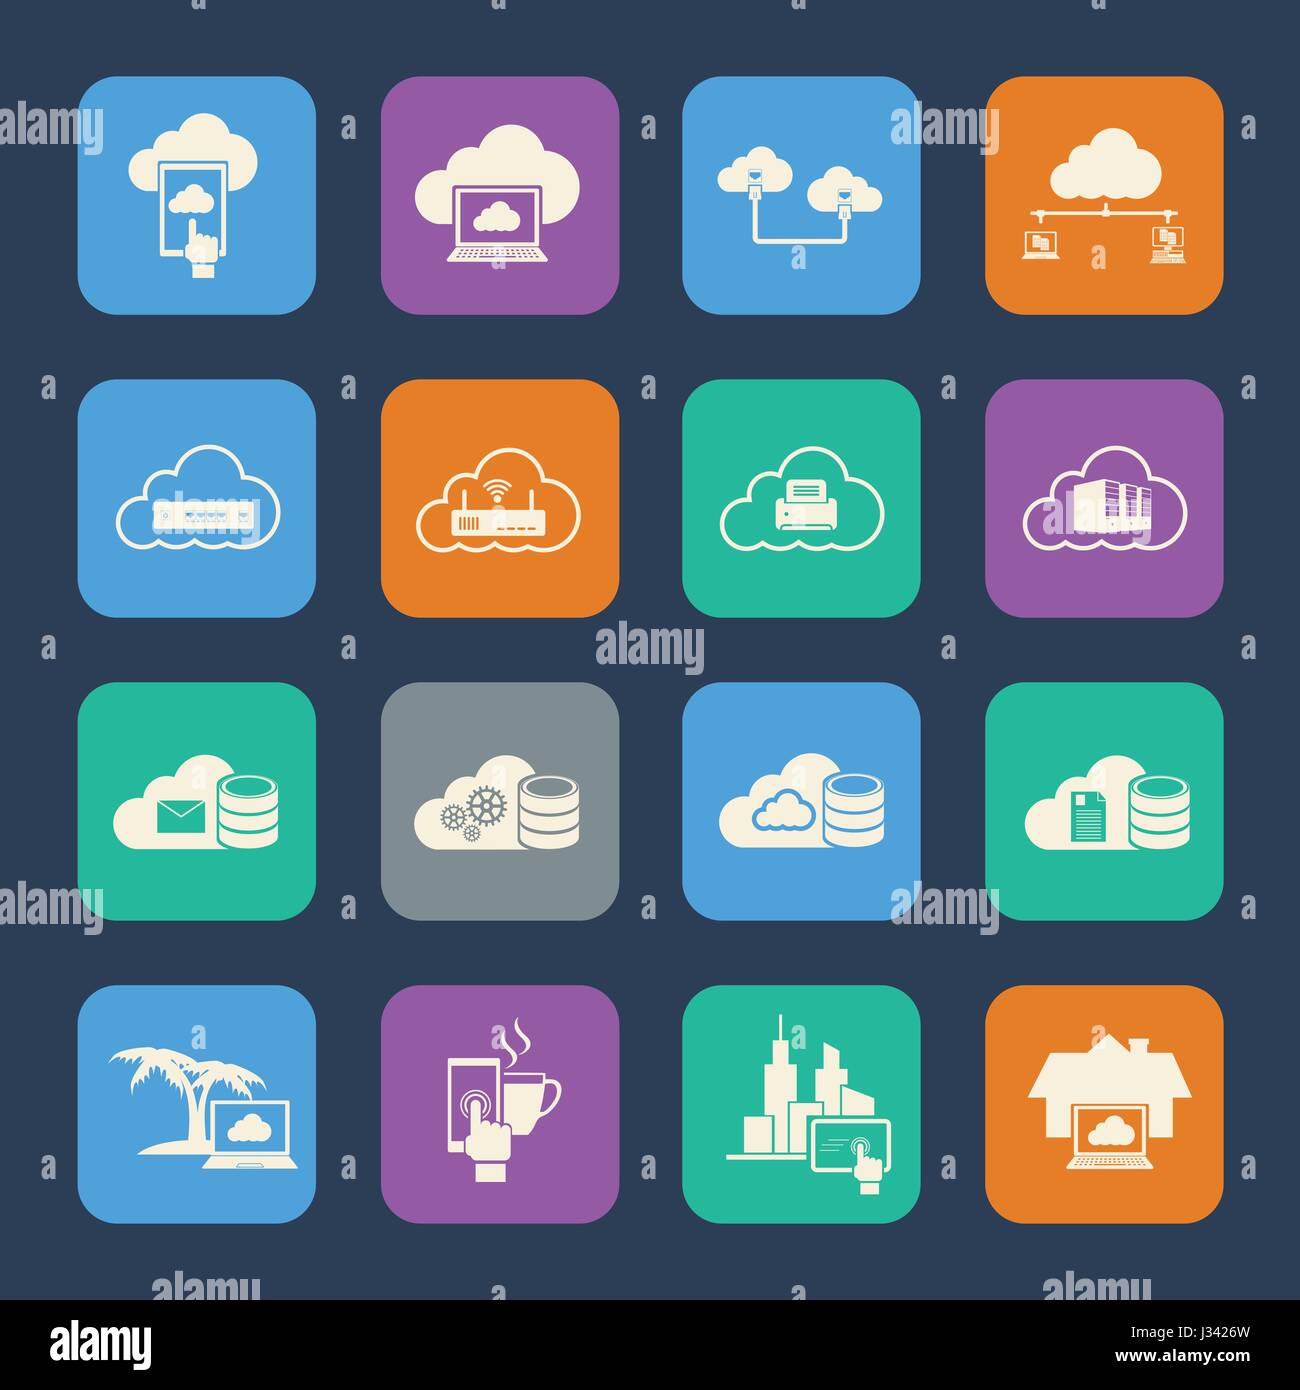 Cloud-computing Icons Set. Flaches Design für die Website und Mobile Anwendungen. Vektor Stock Vektor